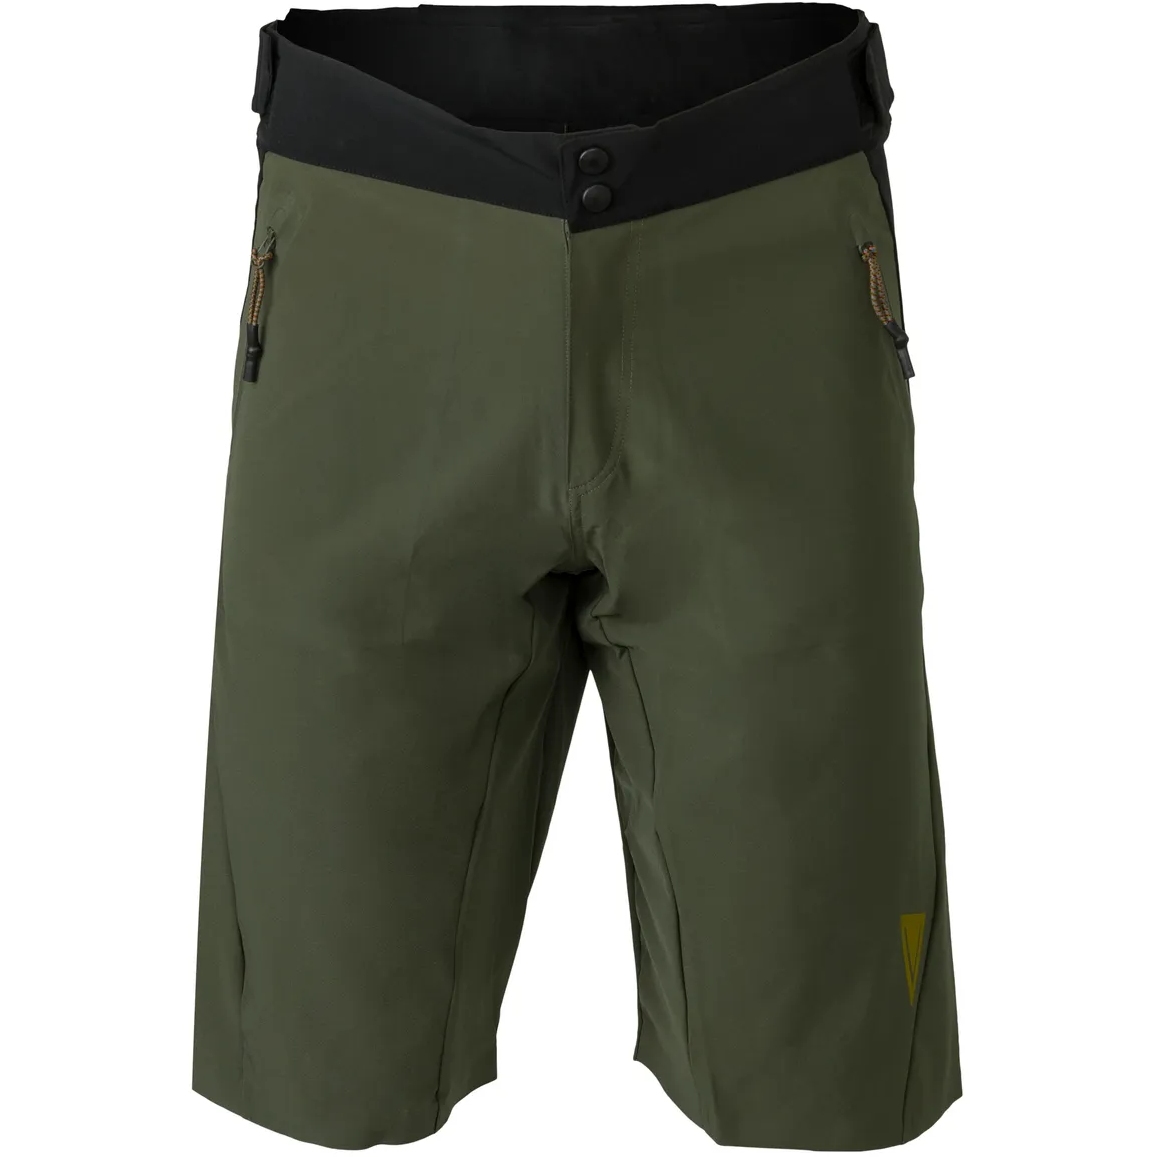 Produktbild von AGU Venture MTB Sommer Shorts - army green